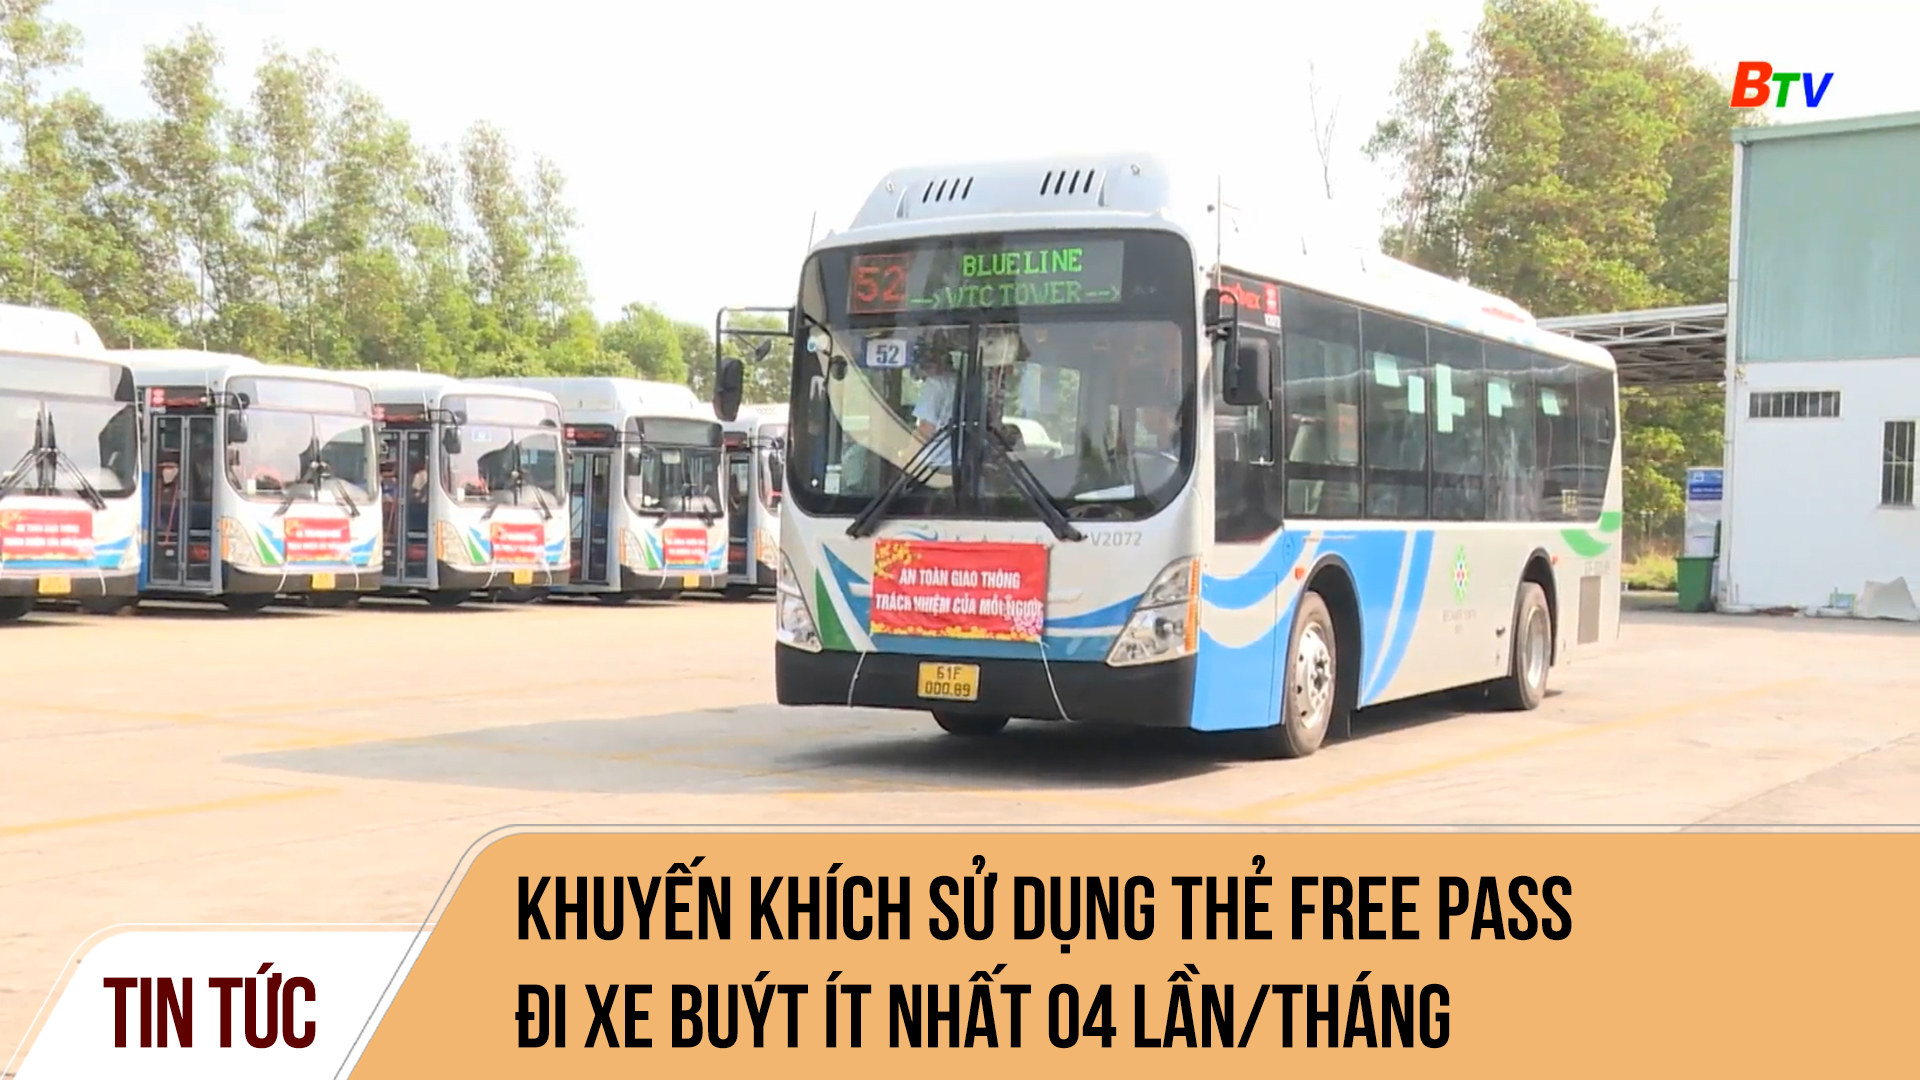 Khuyến khích sử dụng thẻ Free Pass đi xe buýt ít nhất 04 lần/tháng